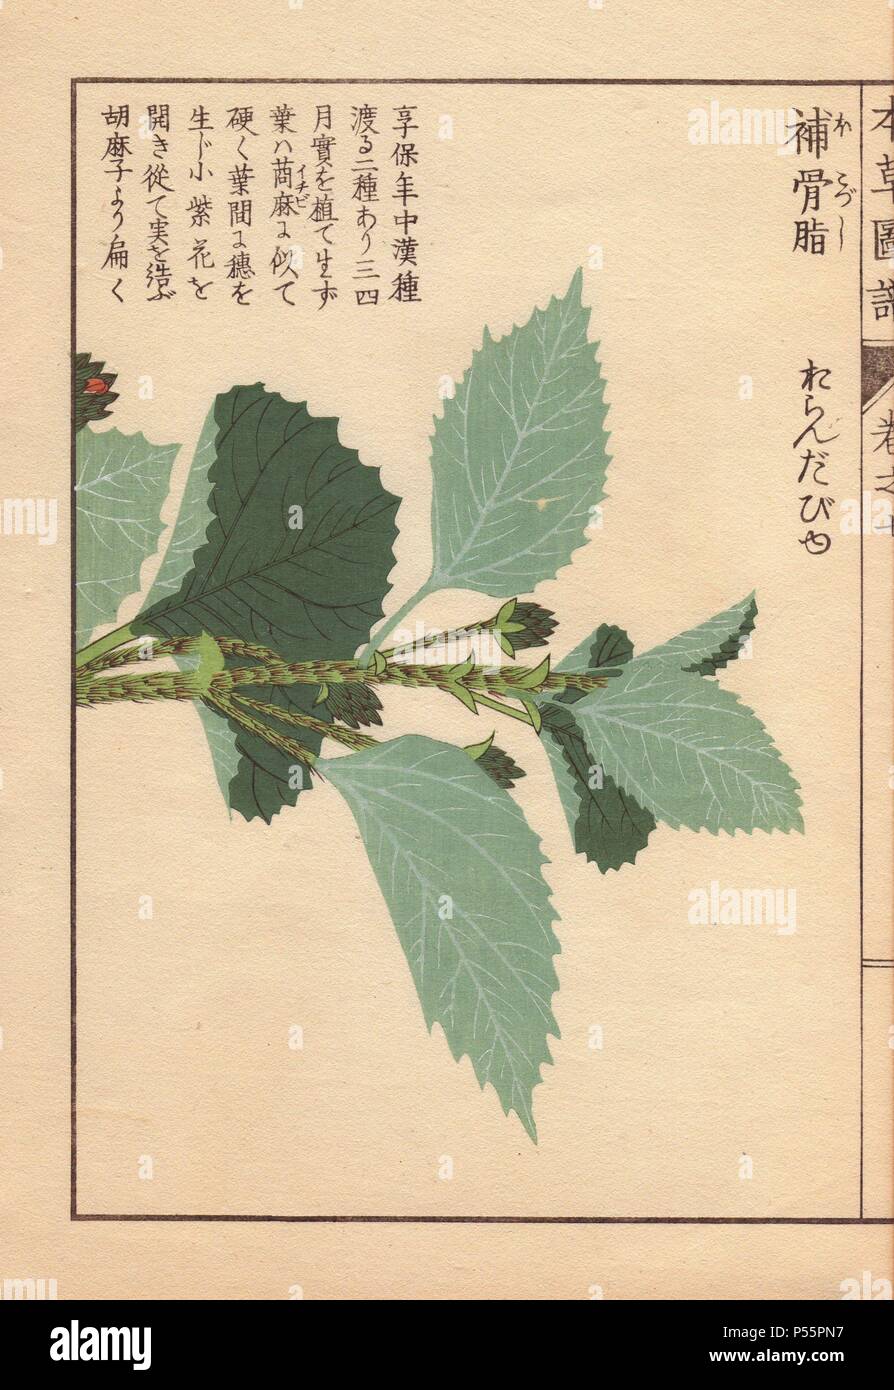 Feuilles et tiges de Babchi ou rhizoctone brun pois, Psoralea corylifolia L., utilisé en médecine chinoise et indienne Ayurveda.. Gravure sur bois imprimée en couleur par Kan'fr Iwasaki de 'Honzo Zufu,' un guide illustré de plantes médicinales, 1884. Iwasaki (1786-1842) était un botaniste japonais, entomologiste et zoologiste. Il est l'un des premiers botanistes japonais d'intégrer le savoir occidental dans ses études. Banque D'Images